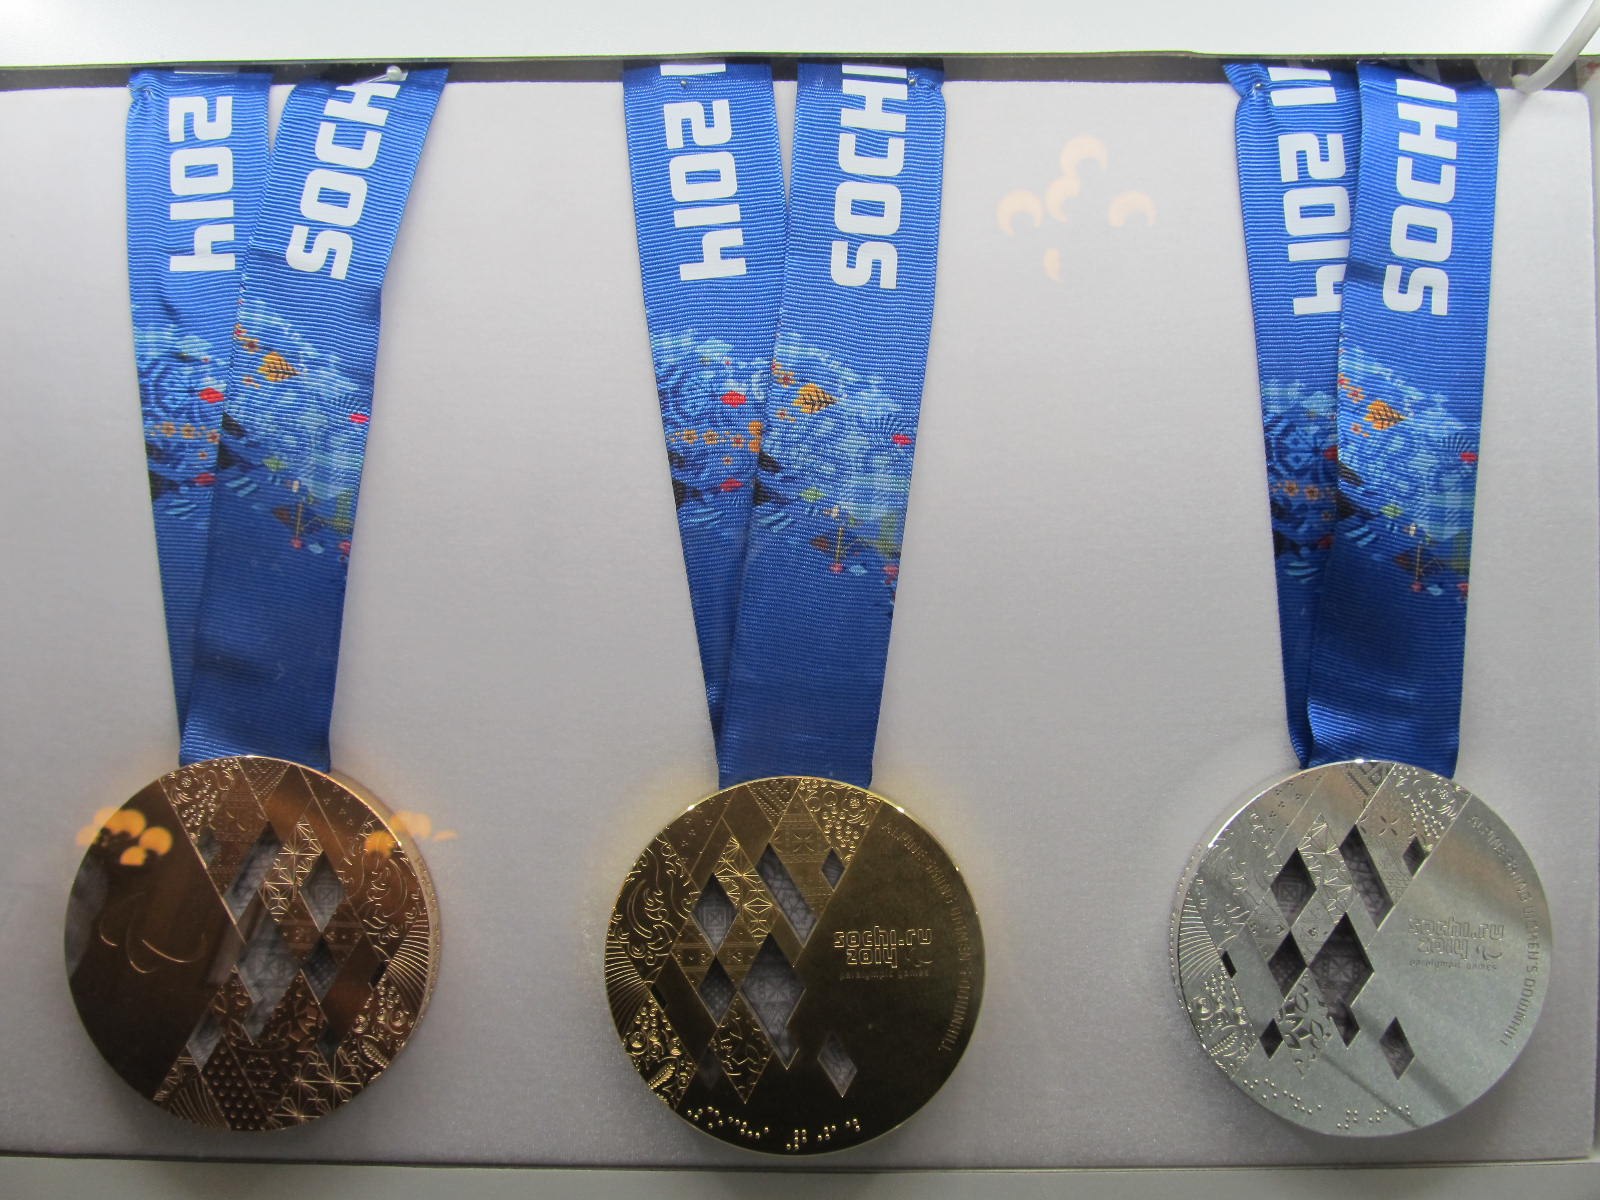 Олимпийская медаль 2014 года. Олимпийские игры в Сочи 2014 медали. Олимпийские награды Сочи 2014. Зимние Олимпийские игры 2014 медали.